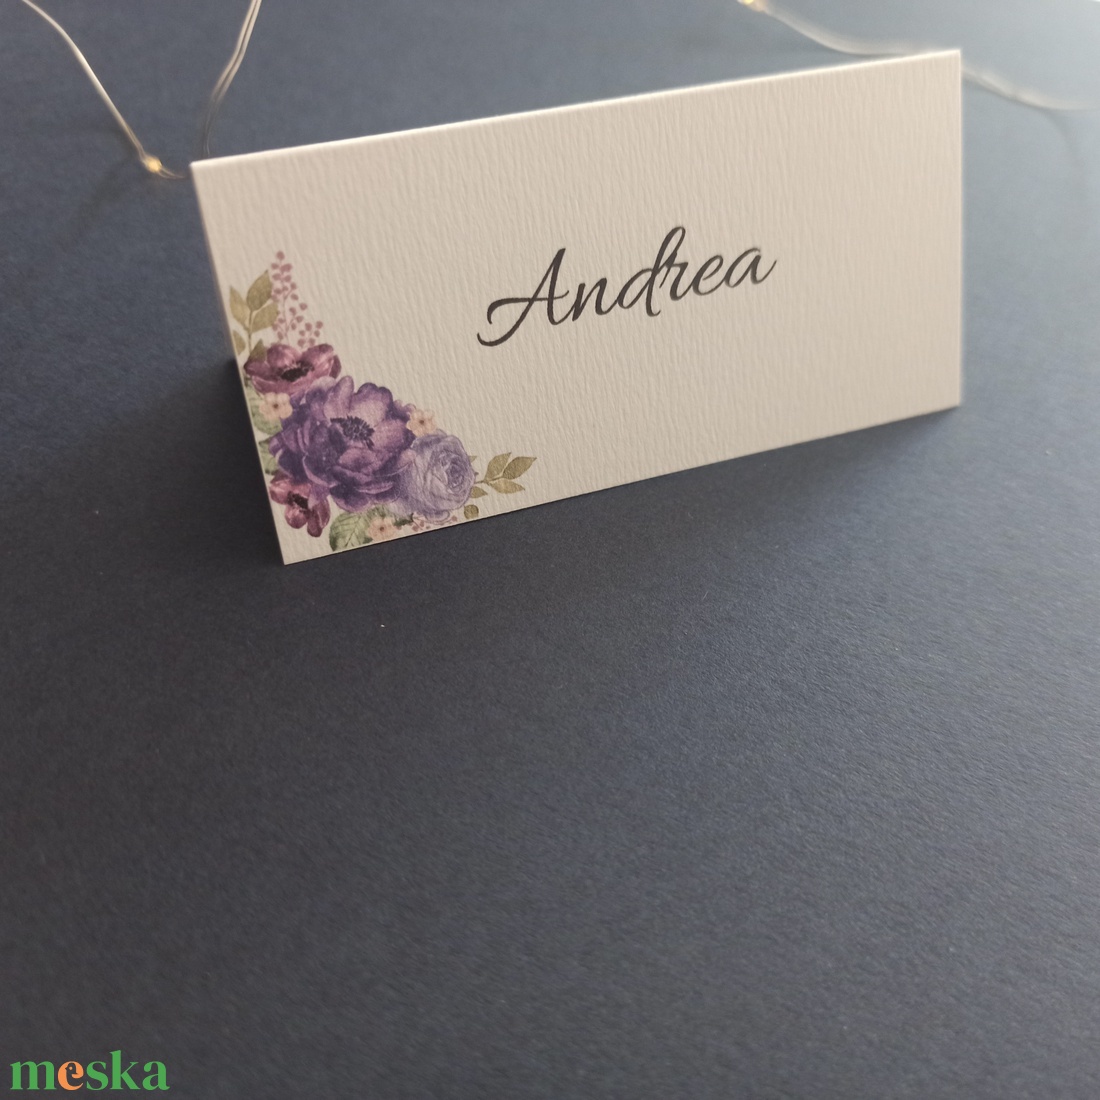 Virágos ültetőkártya esküvőre, születésnapra, partyra - esküvő - meghívó & kártya - ültetési rend - Meska.hu